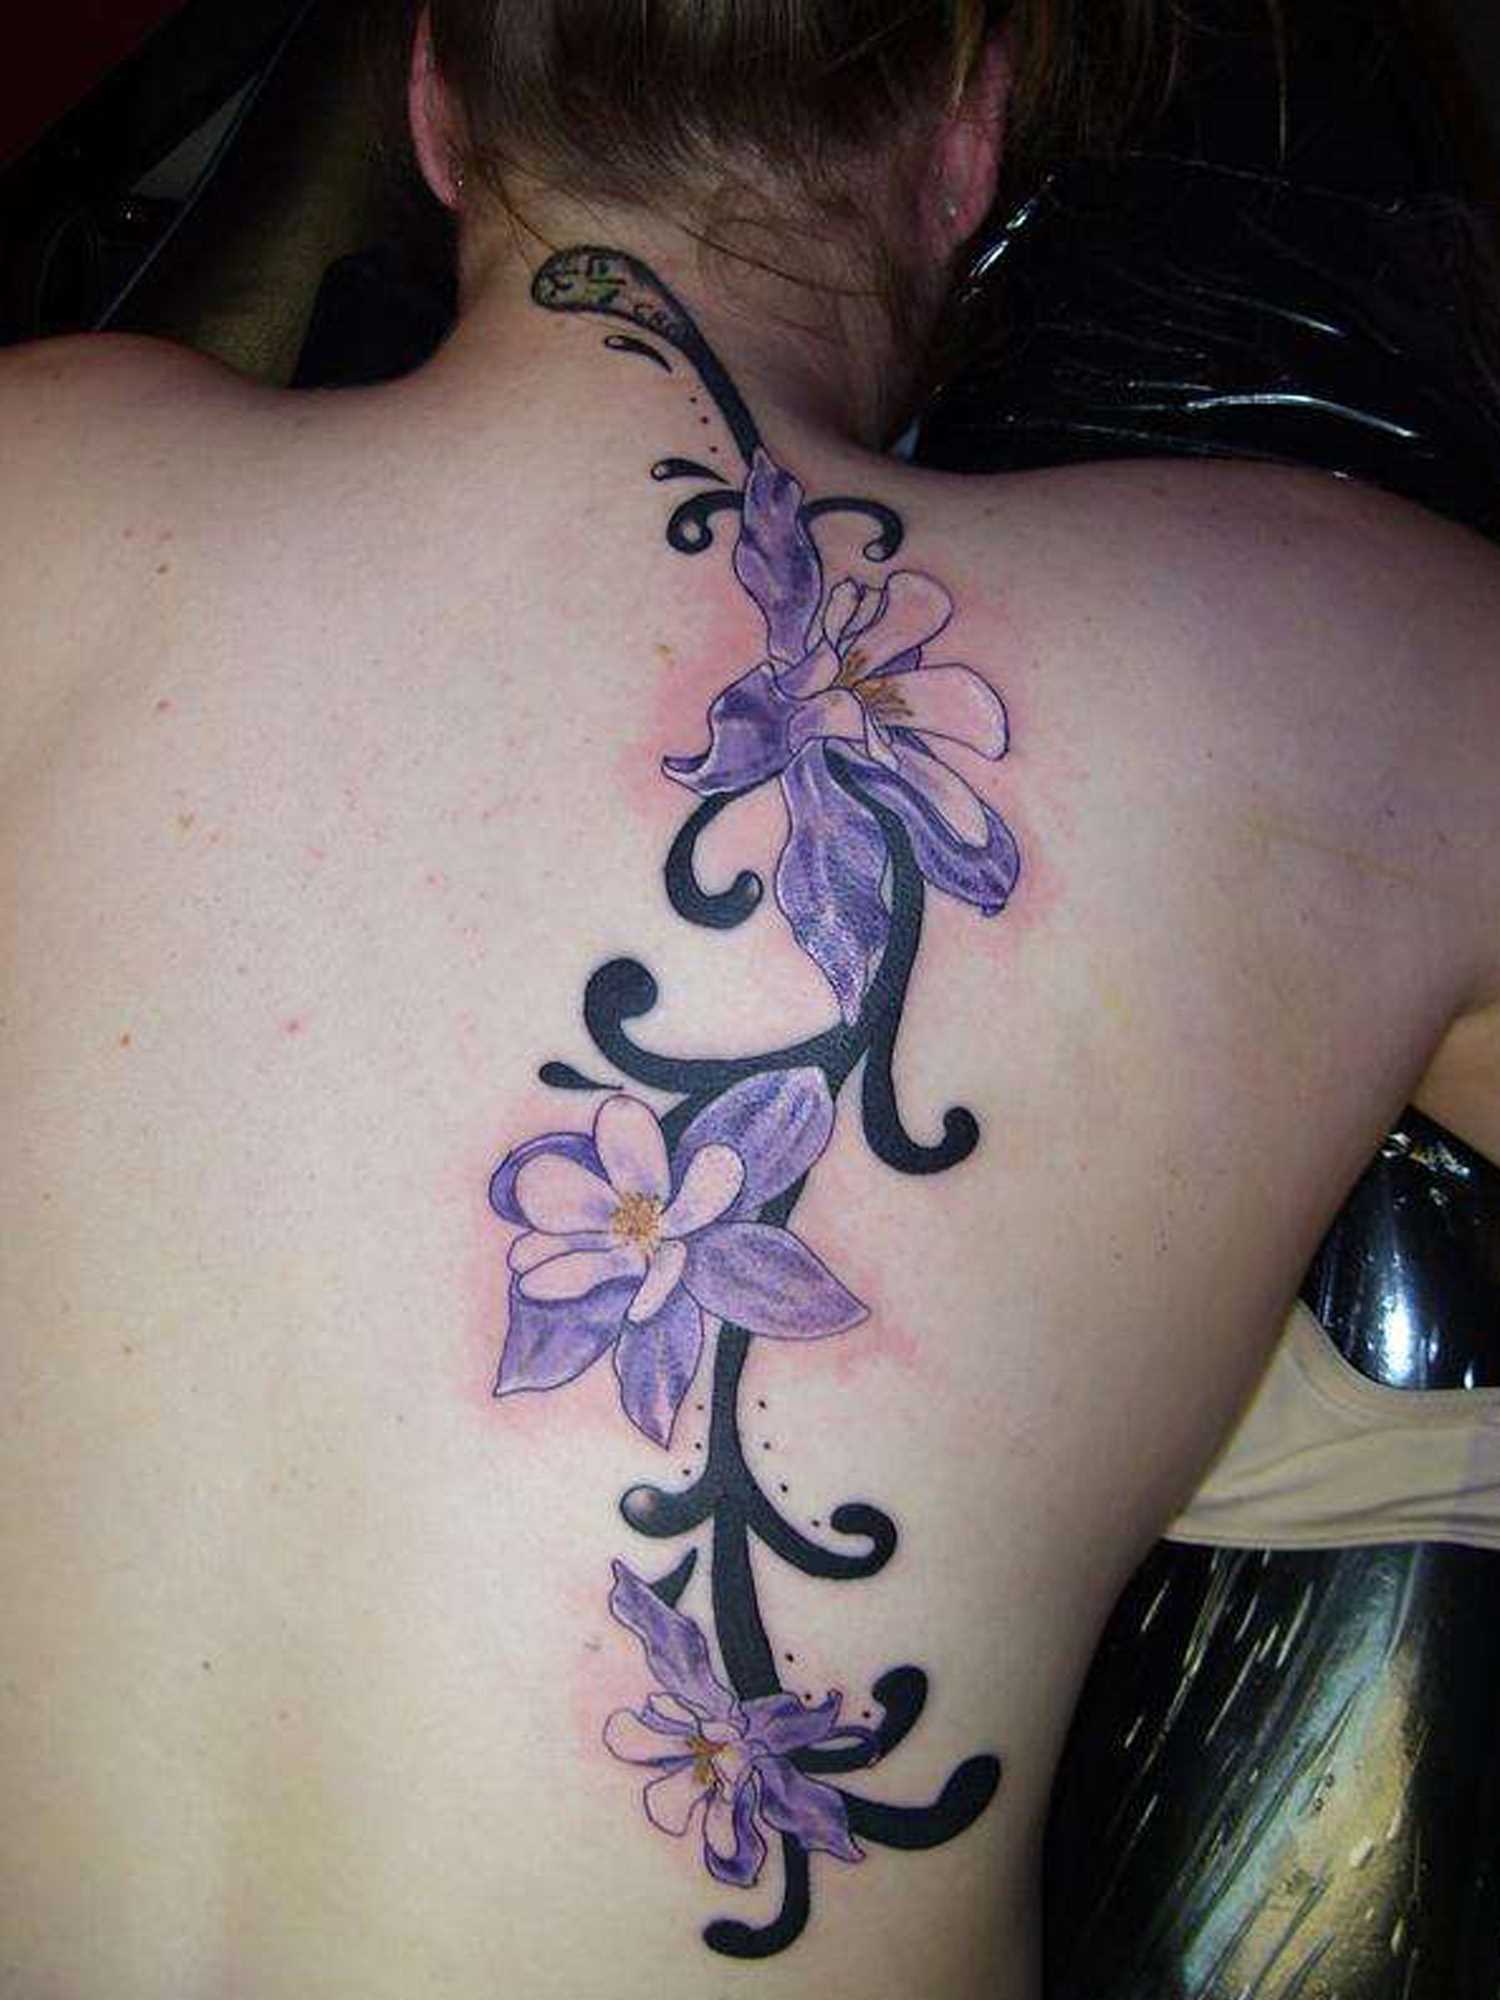 Tatuagem nas costas de uma menina - cores